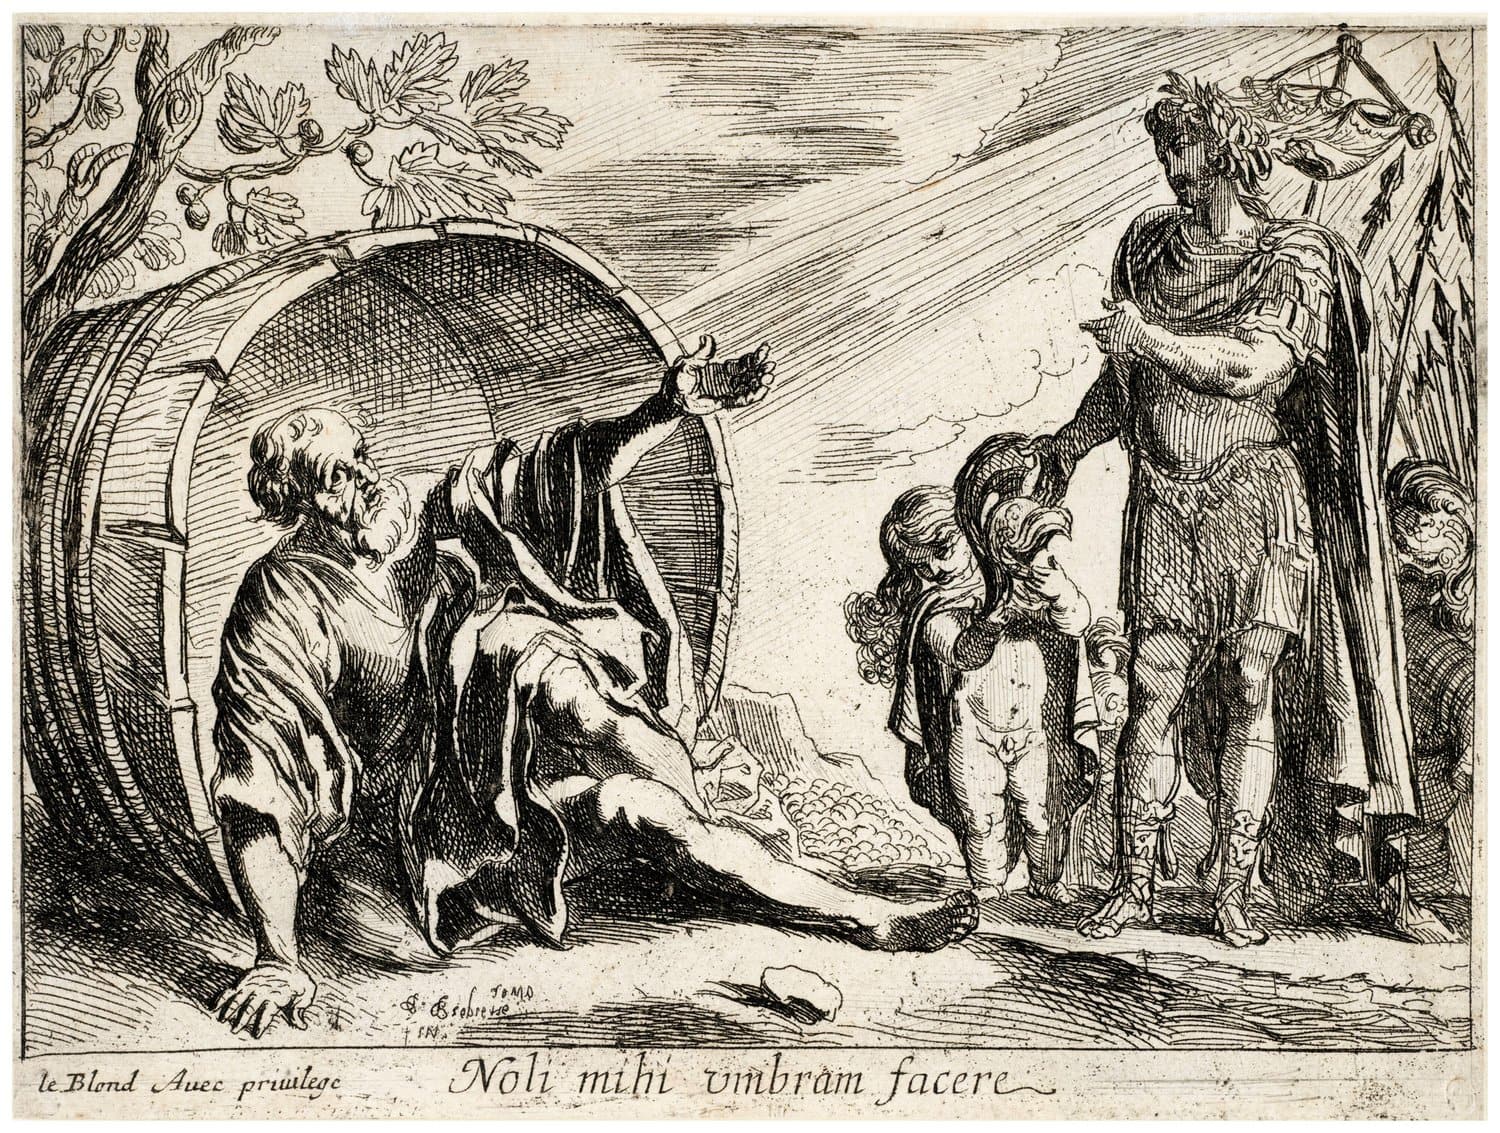 אלכסנדר הגדול משוחח עם הפילוסוף היווני דיוגנס. יצירה של פייר ברבייט, 1635 (צילום: incamerastock / Alamy Stock Photo)